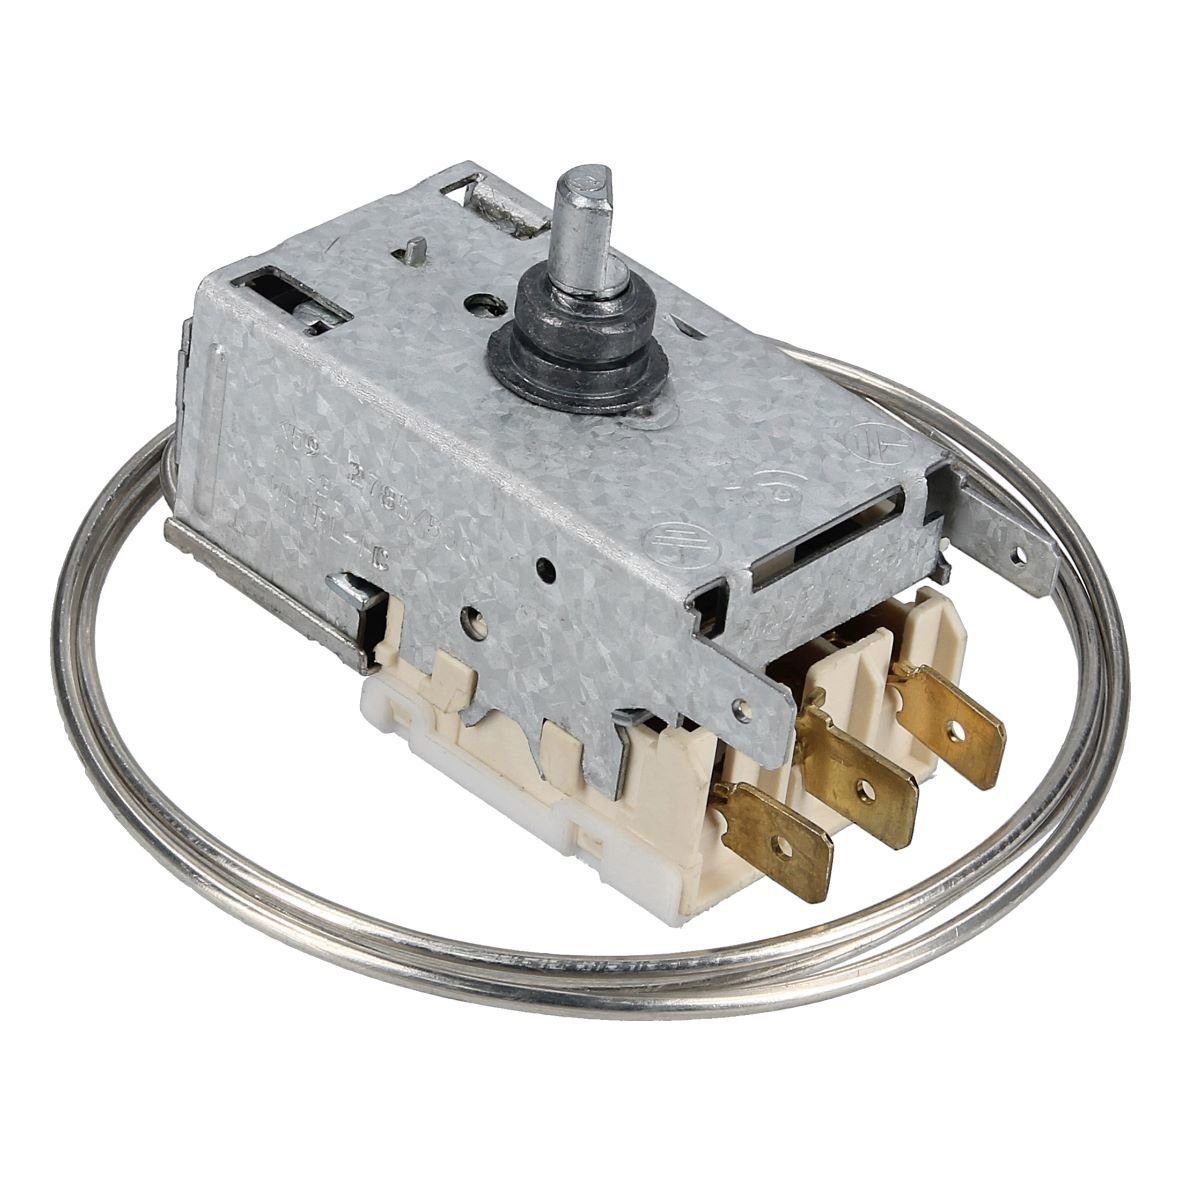 K59-S2785500 Thermodetektor wie Kühlschrank Thermostat / RobertShaw Gefrierschrank easyPART Ranco,